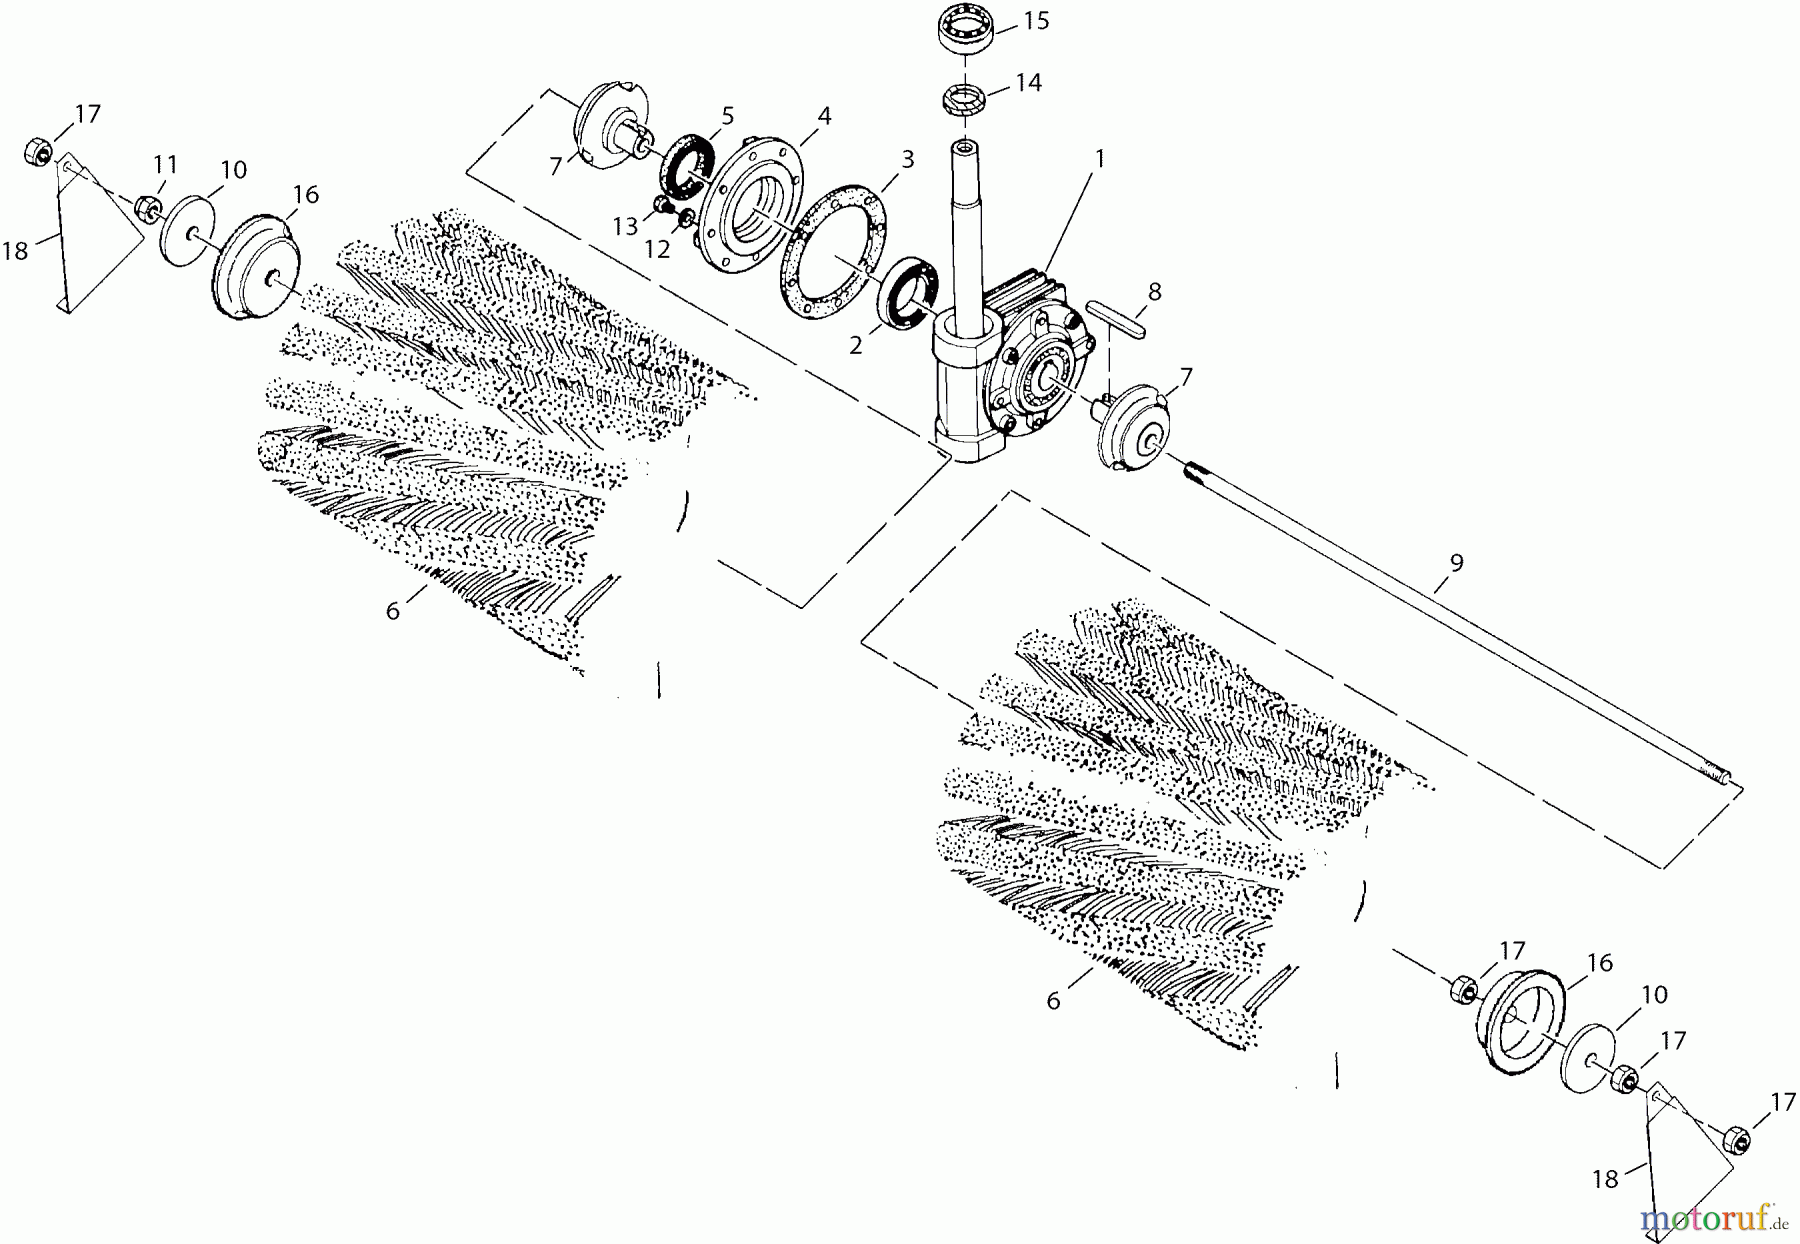  Dolmar Rasentraktoren Zubehör RS-120, TA-250, TK-420, TK-520, TS-125 17  TK-520 - Kehrmaschine (Schnellwechsler)